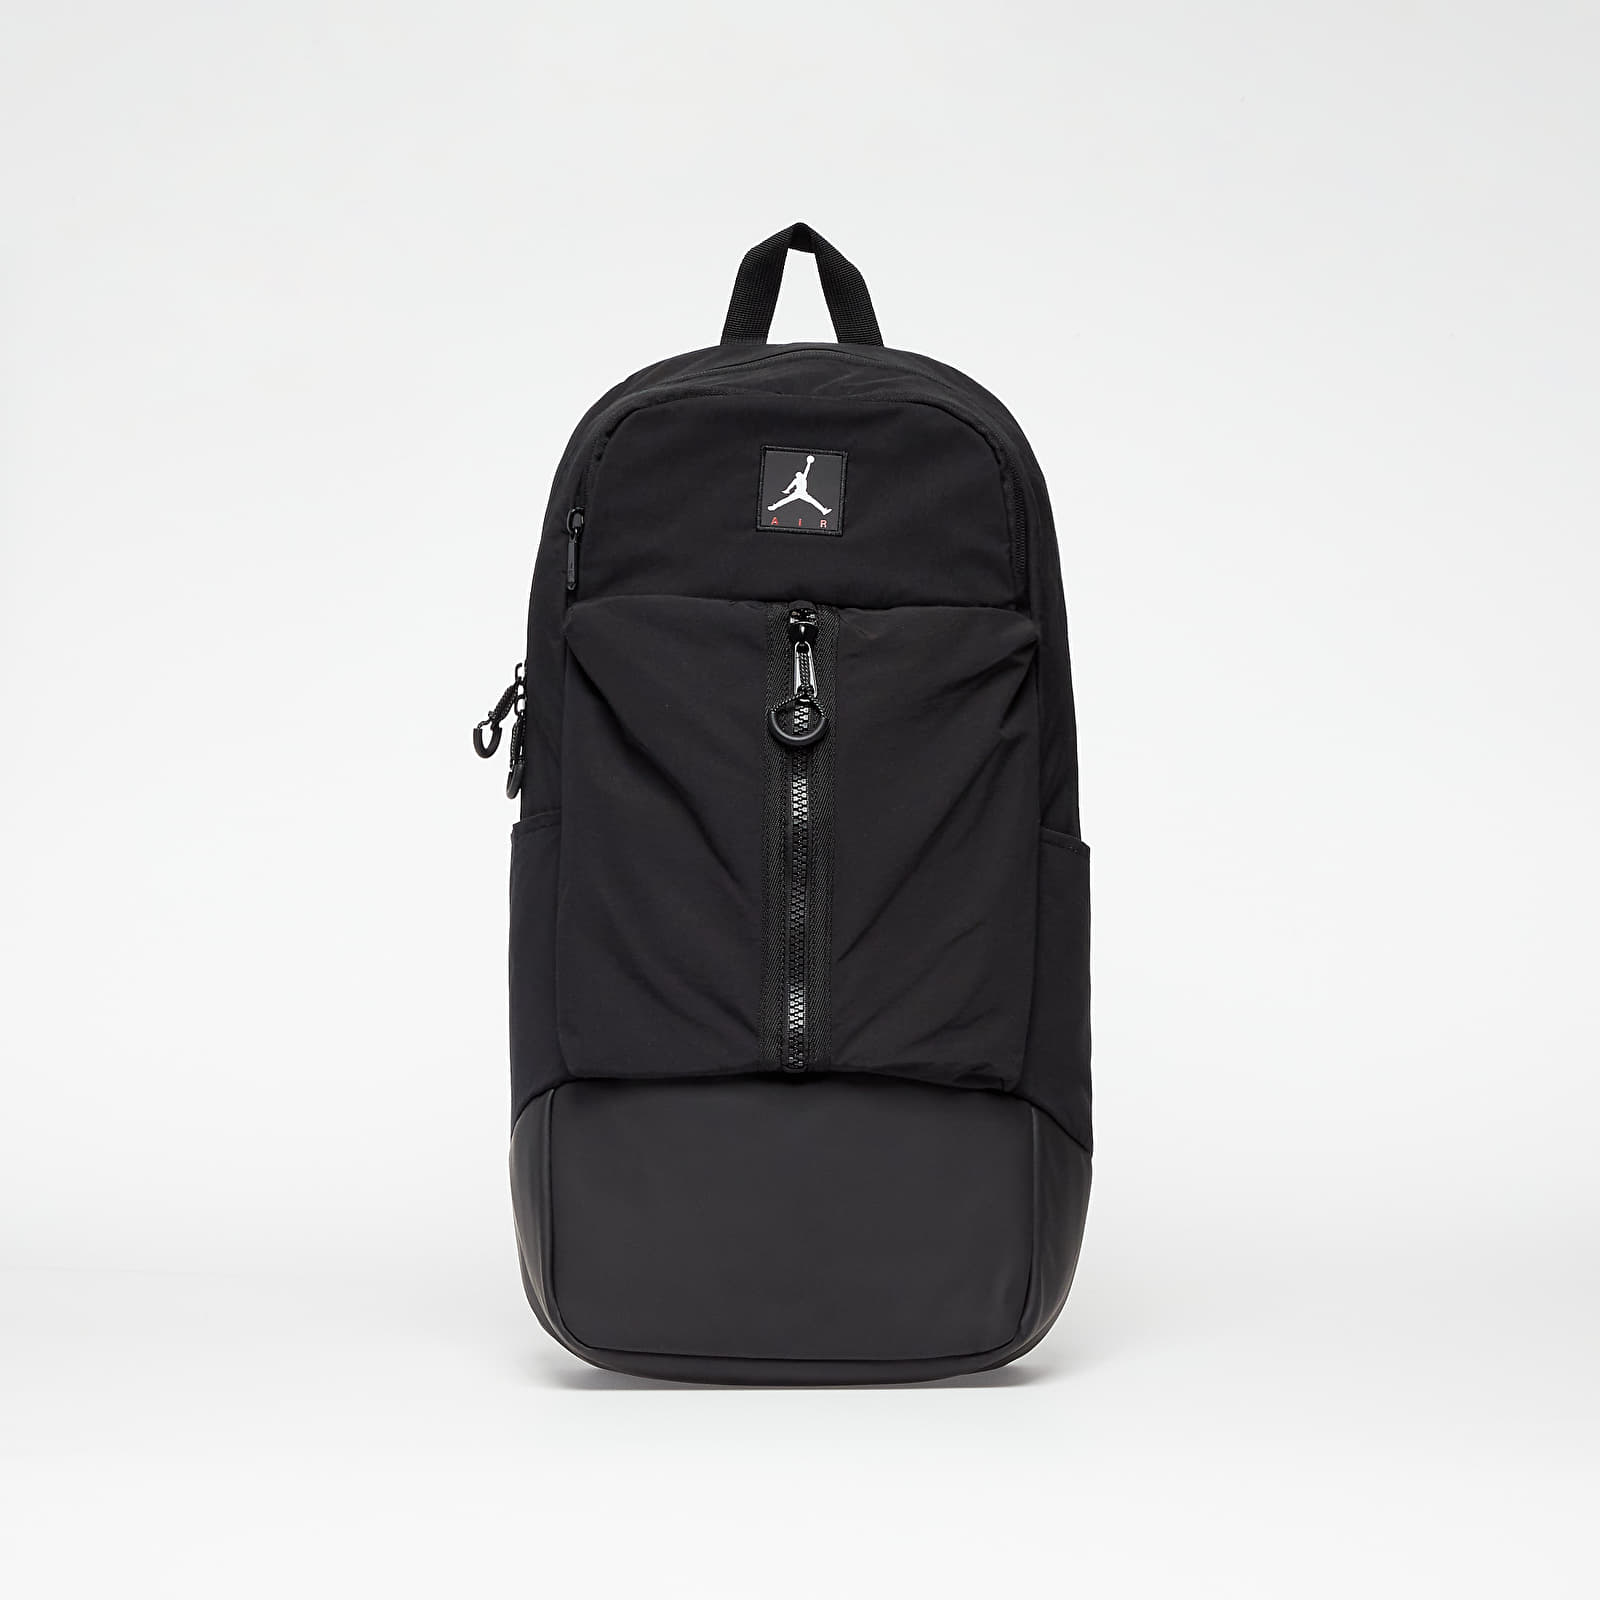 Σακίδια Jordan Air Backpack Black